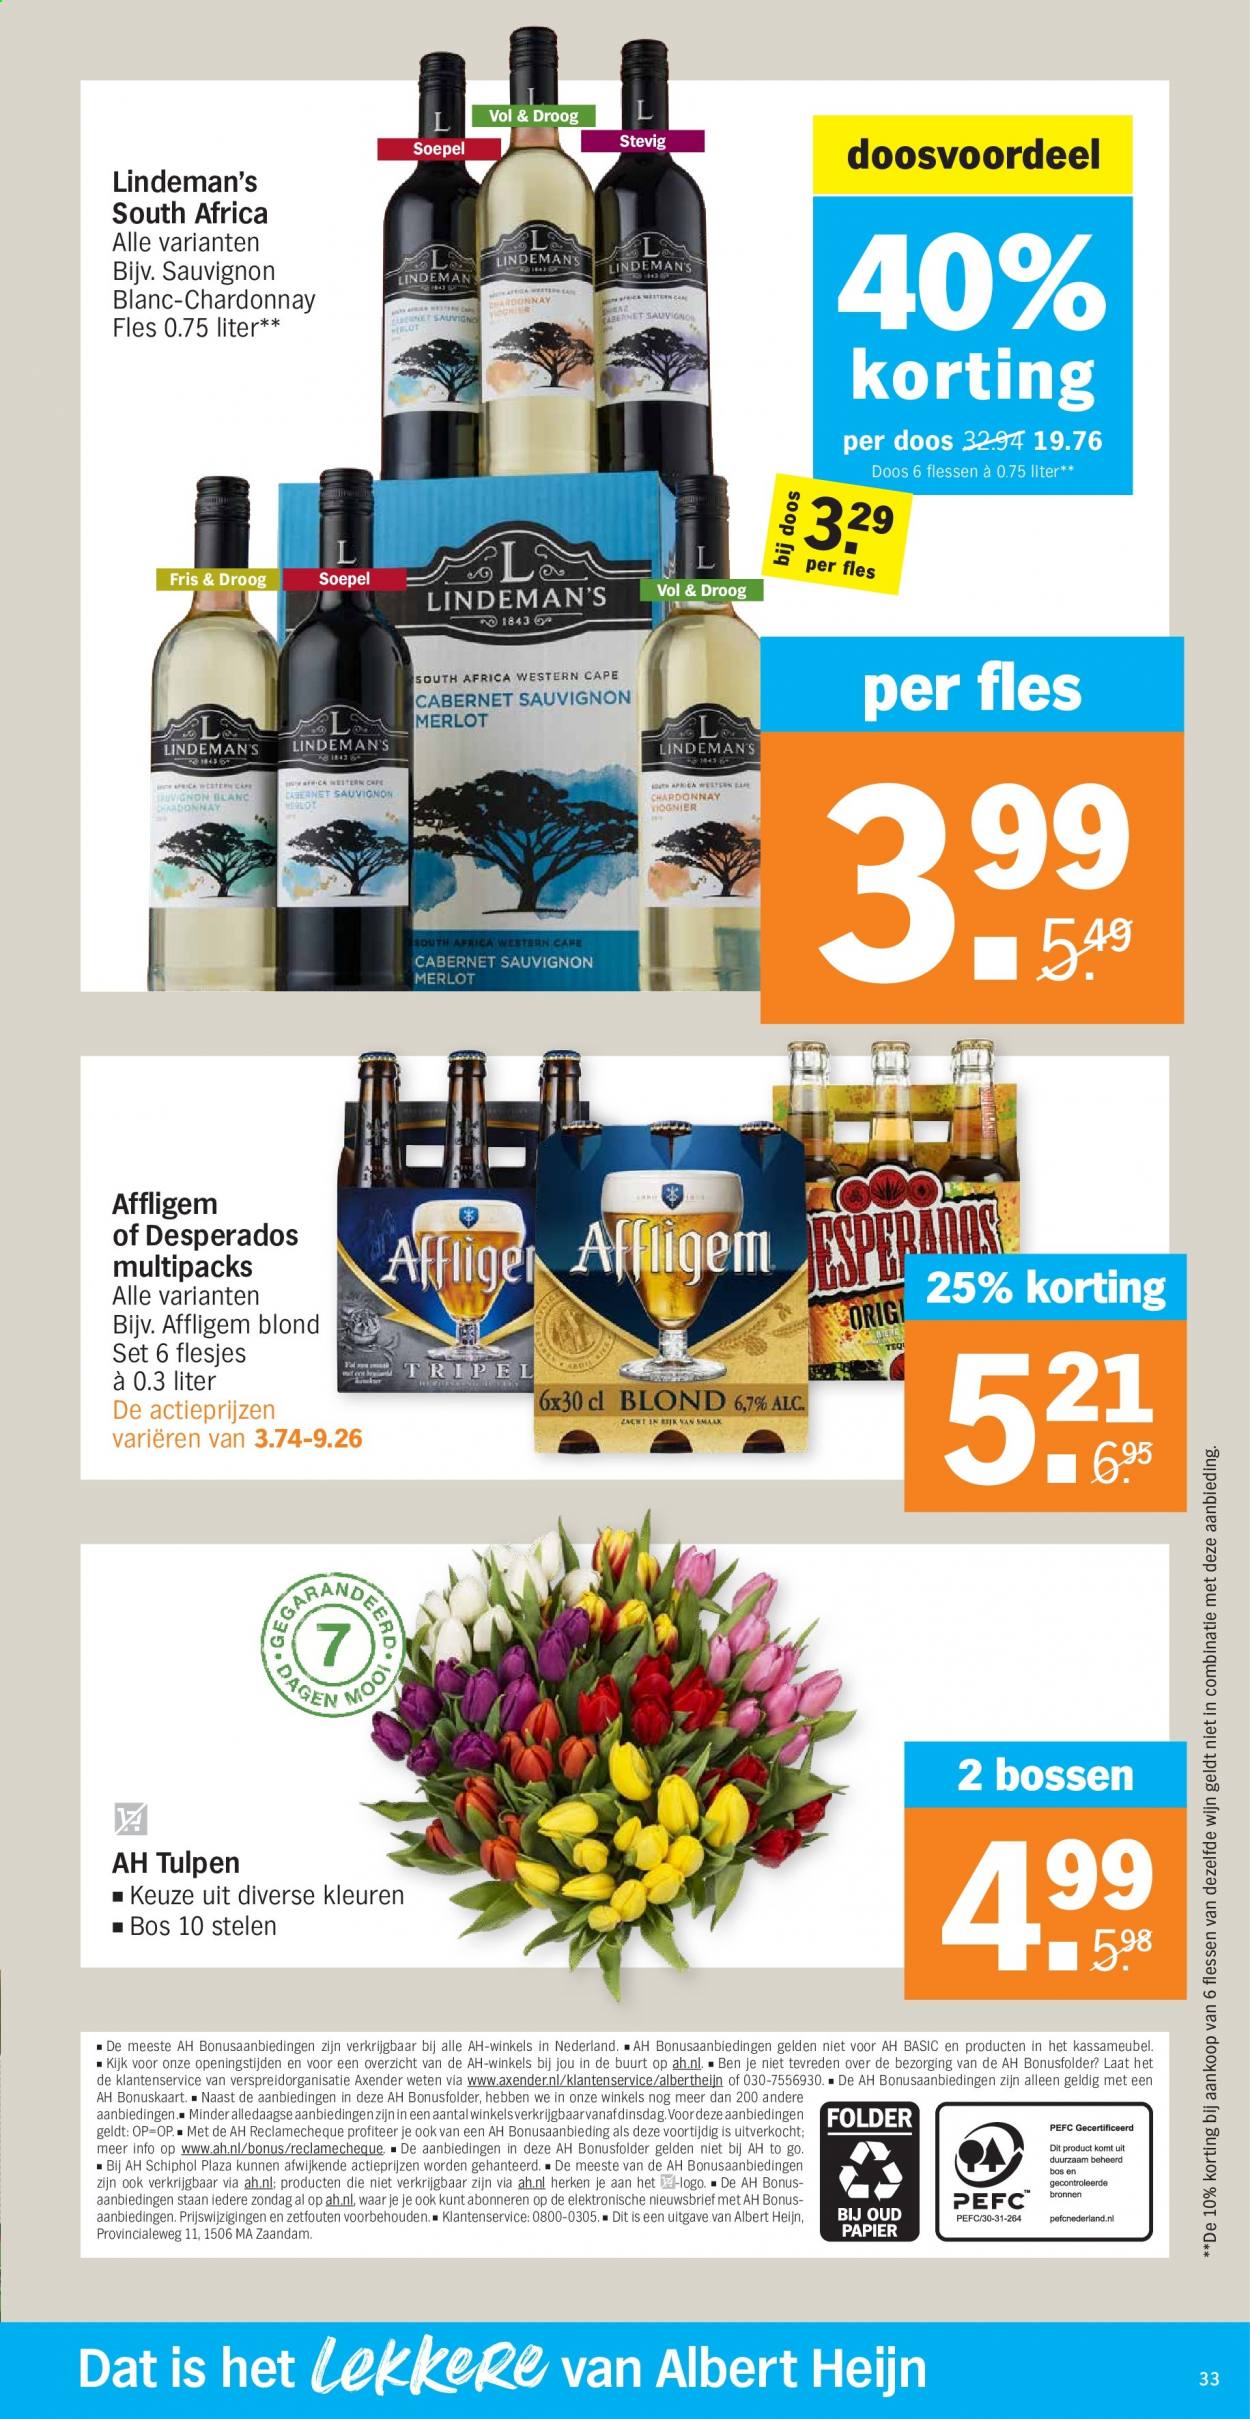 thumbnail - Albert Heijn-aanbieding - 8-3-2021 - 14-3-2021 -  producten in de aanbieding - Affligem, Chardonnay, Sauvignon Blanc, wijn. Pagina 33.